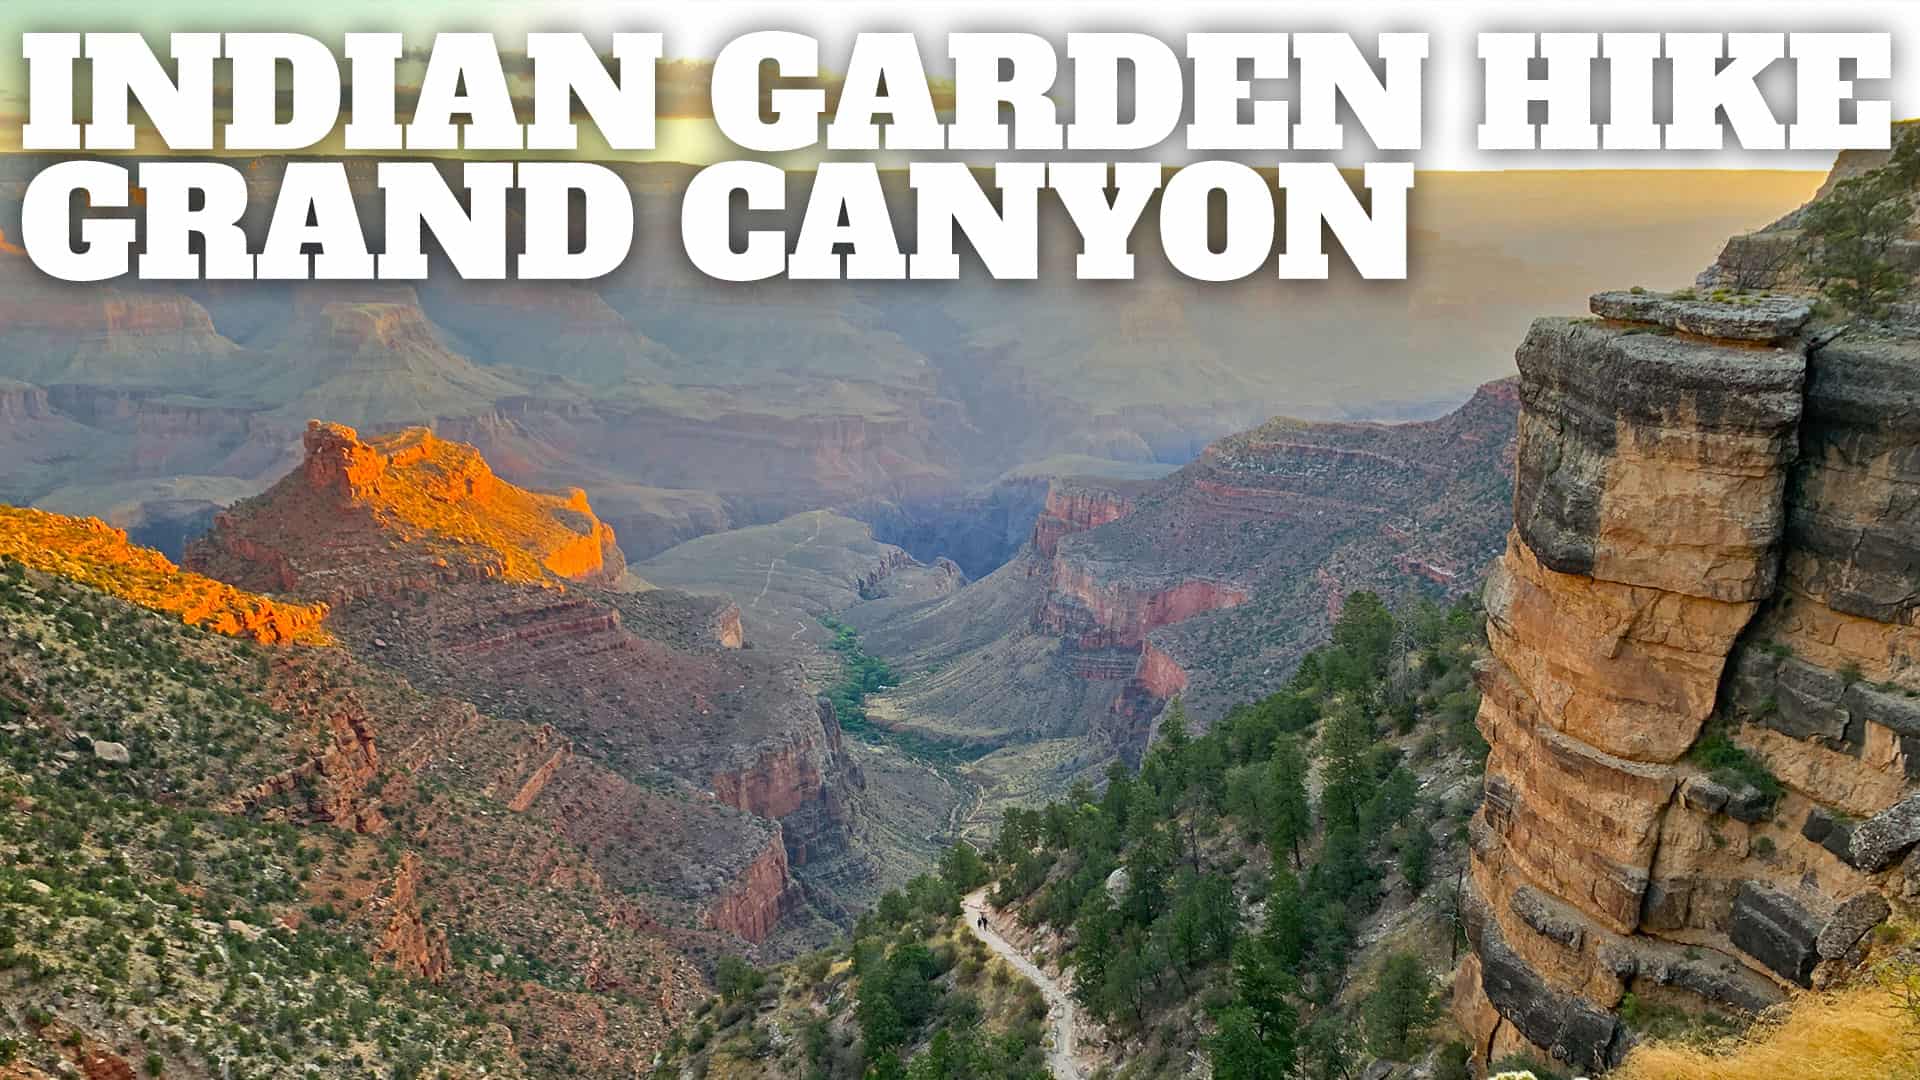 Indian Garden Grand Canyon Hike Guide - Hikingguycom